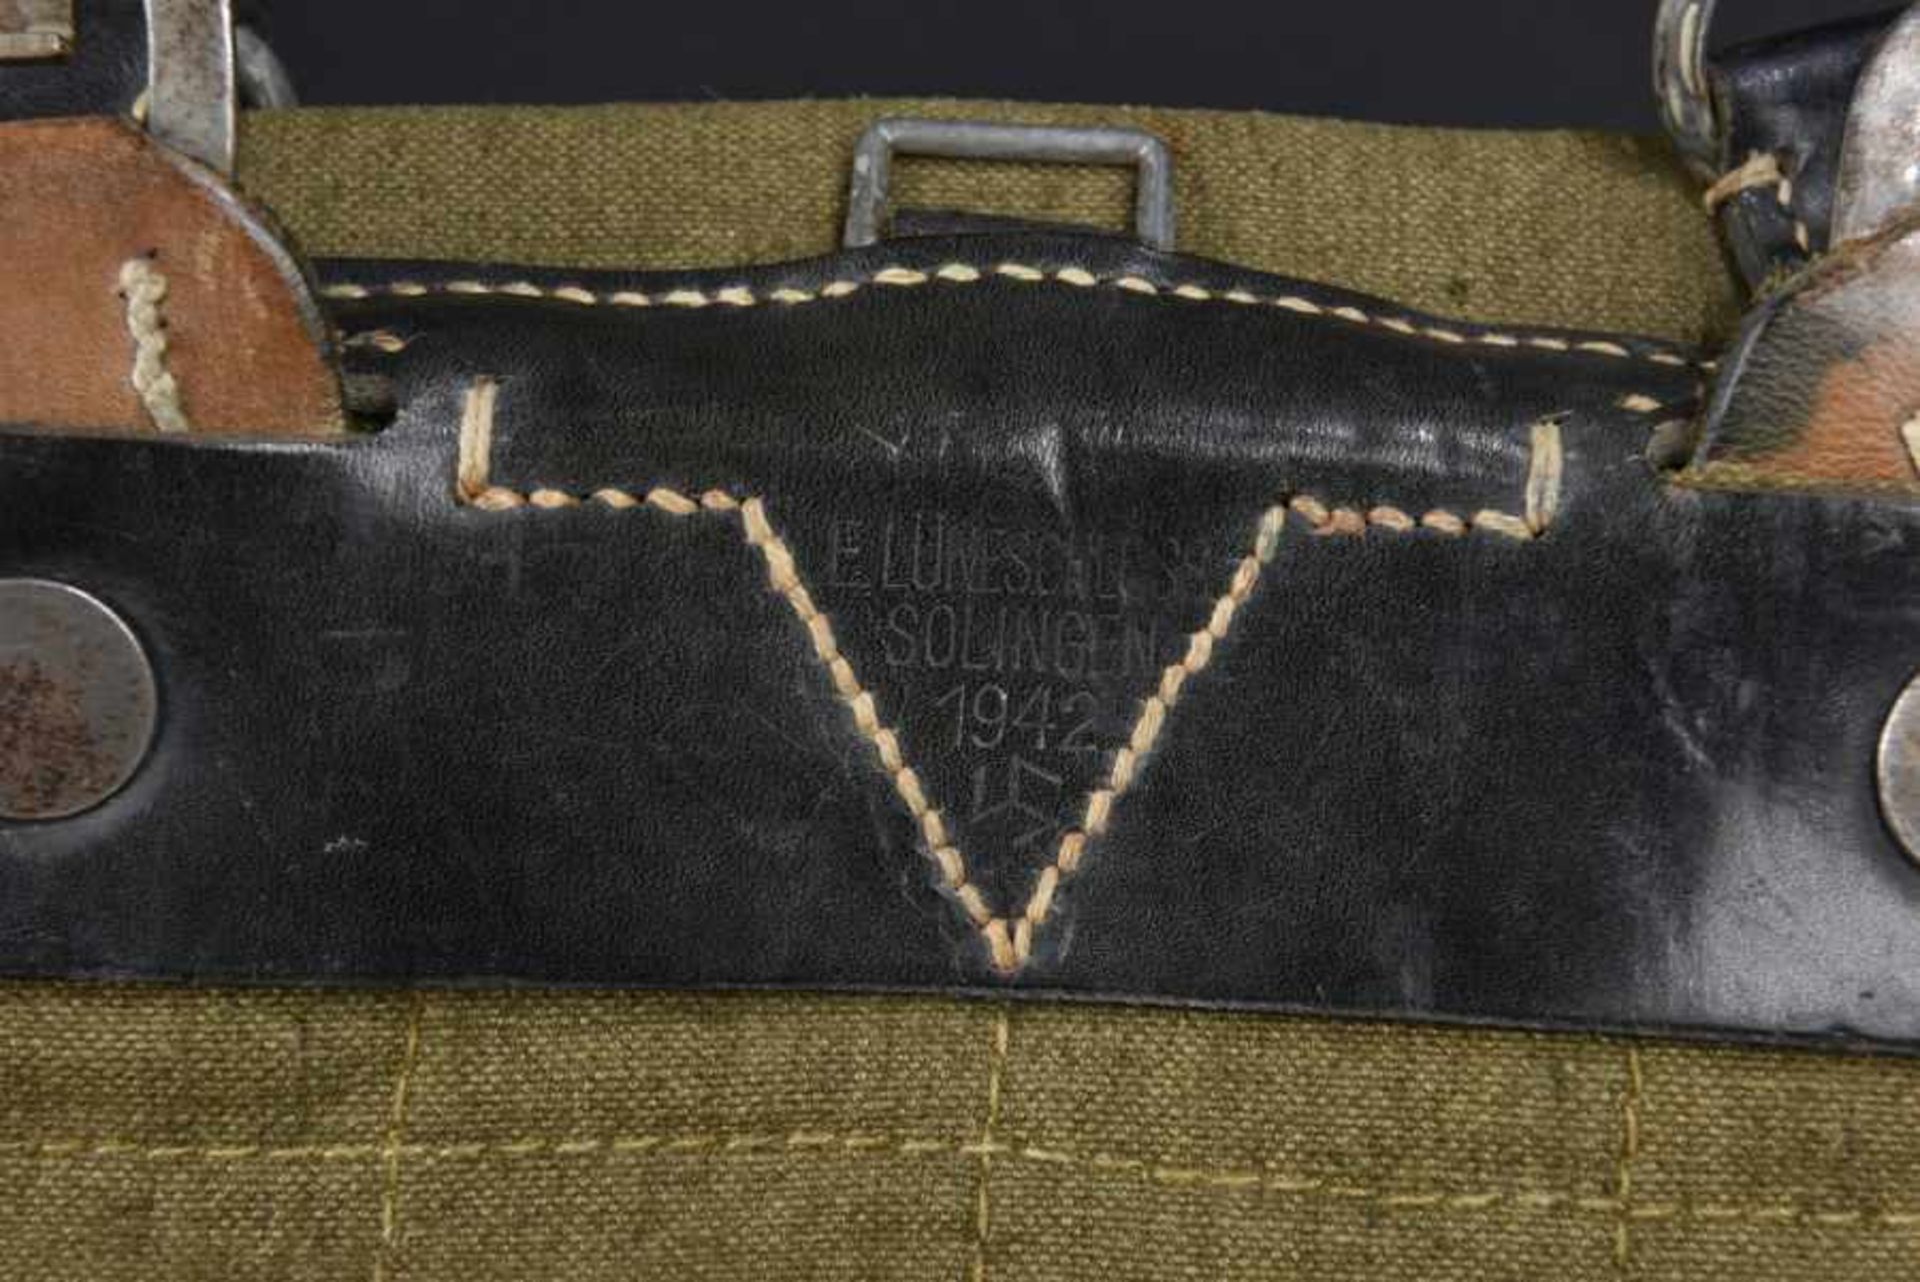 Sacs à dos allemandComprenant deux sacs à dos en toile Feldgrau et cuir. Les bretelles sont - Bild 3 aus 4